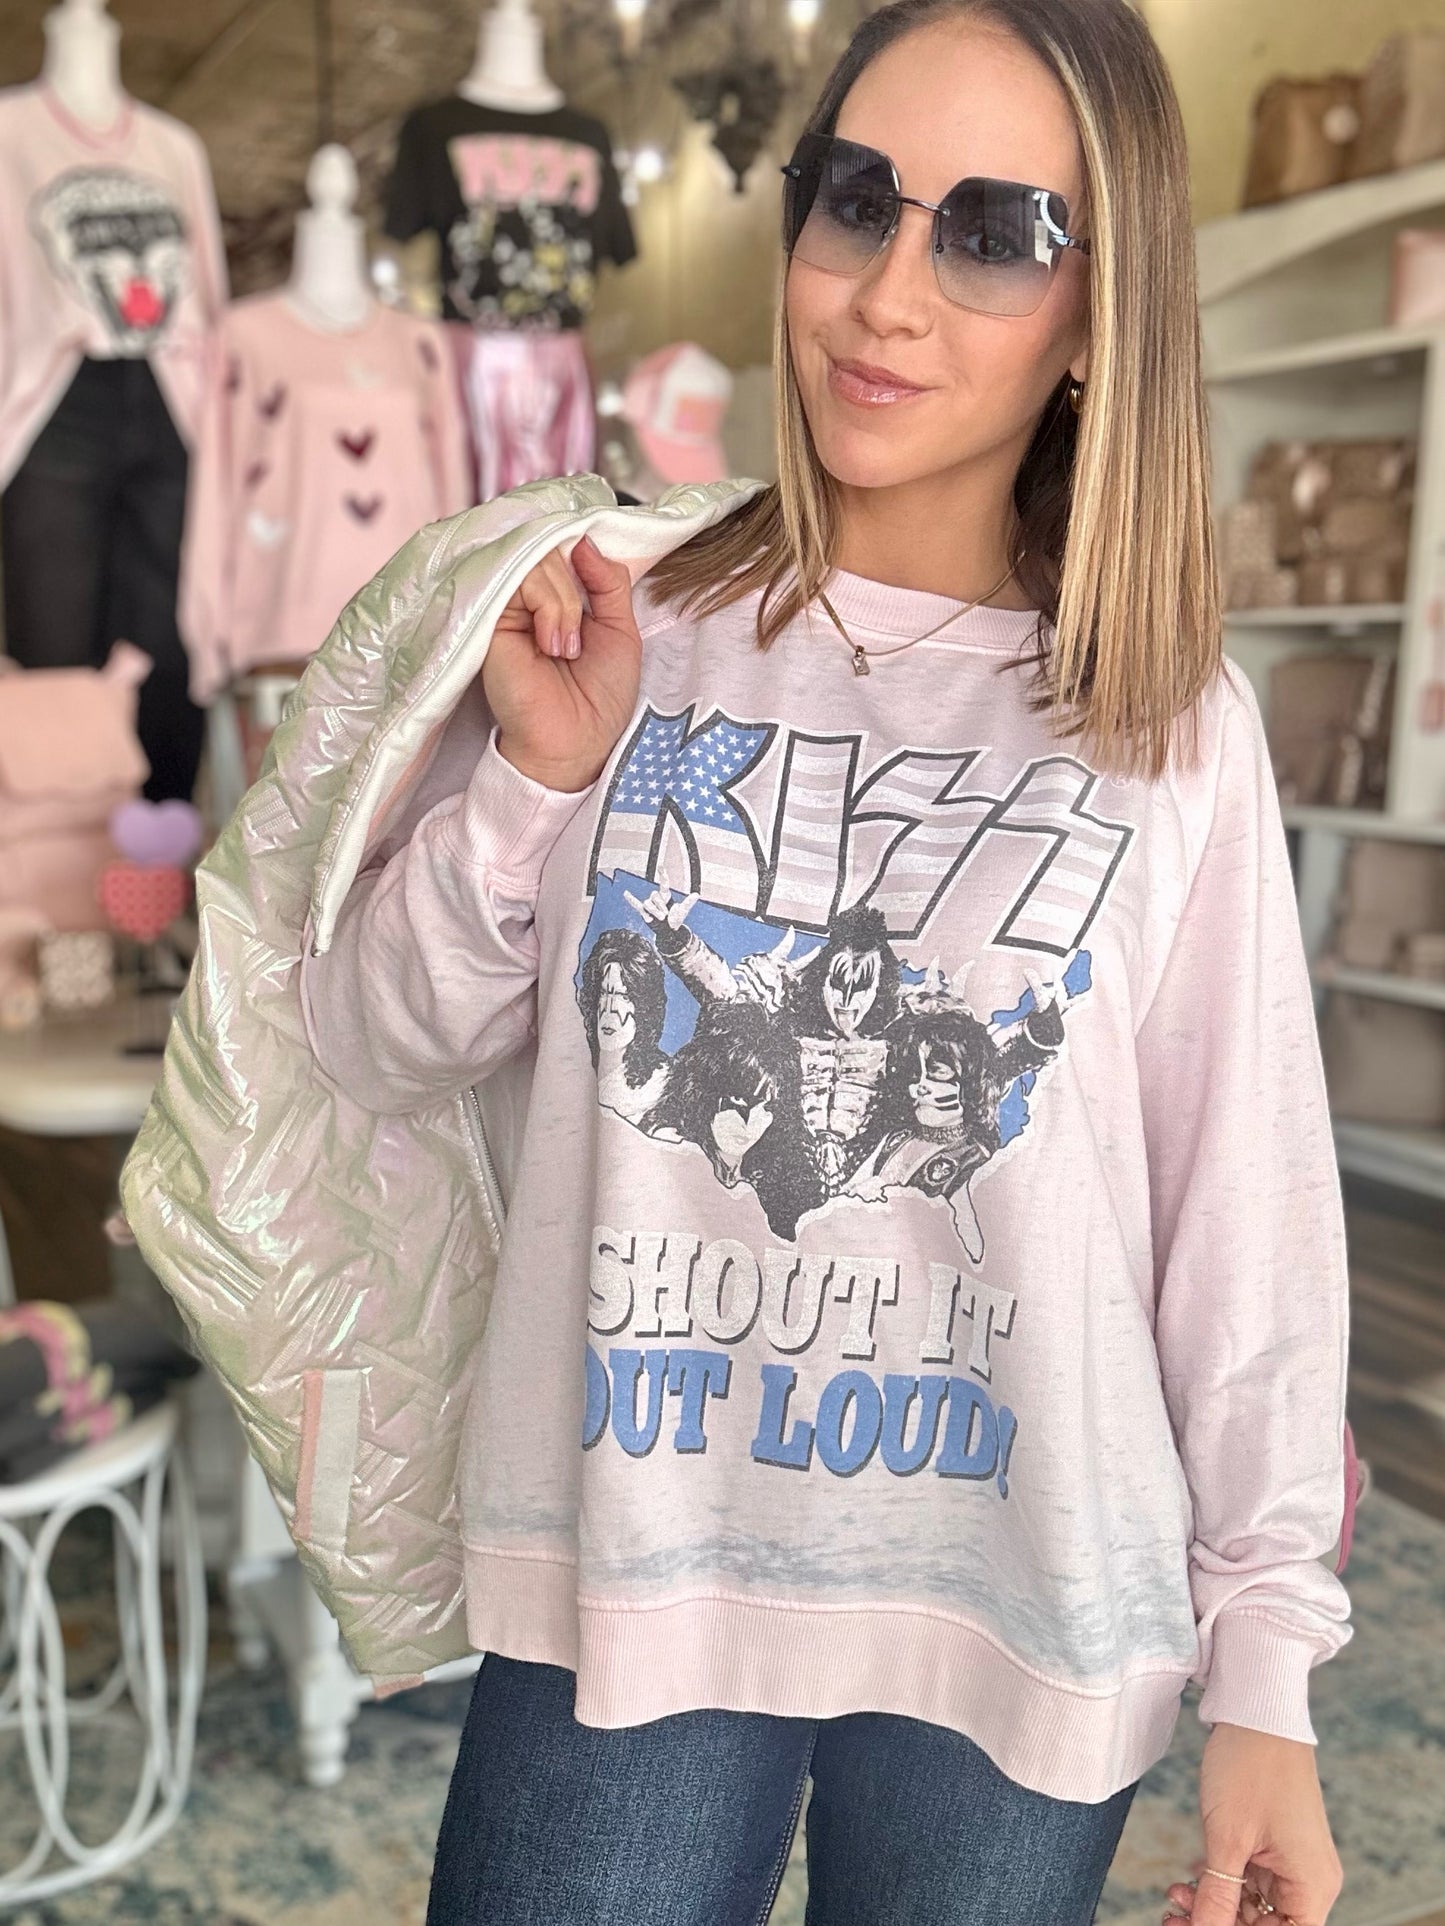 Kiss Shout It Out Loud Sweatshirt in Pale Pink